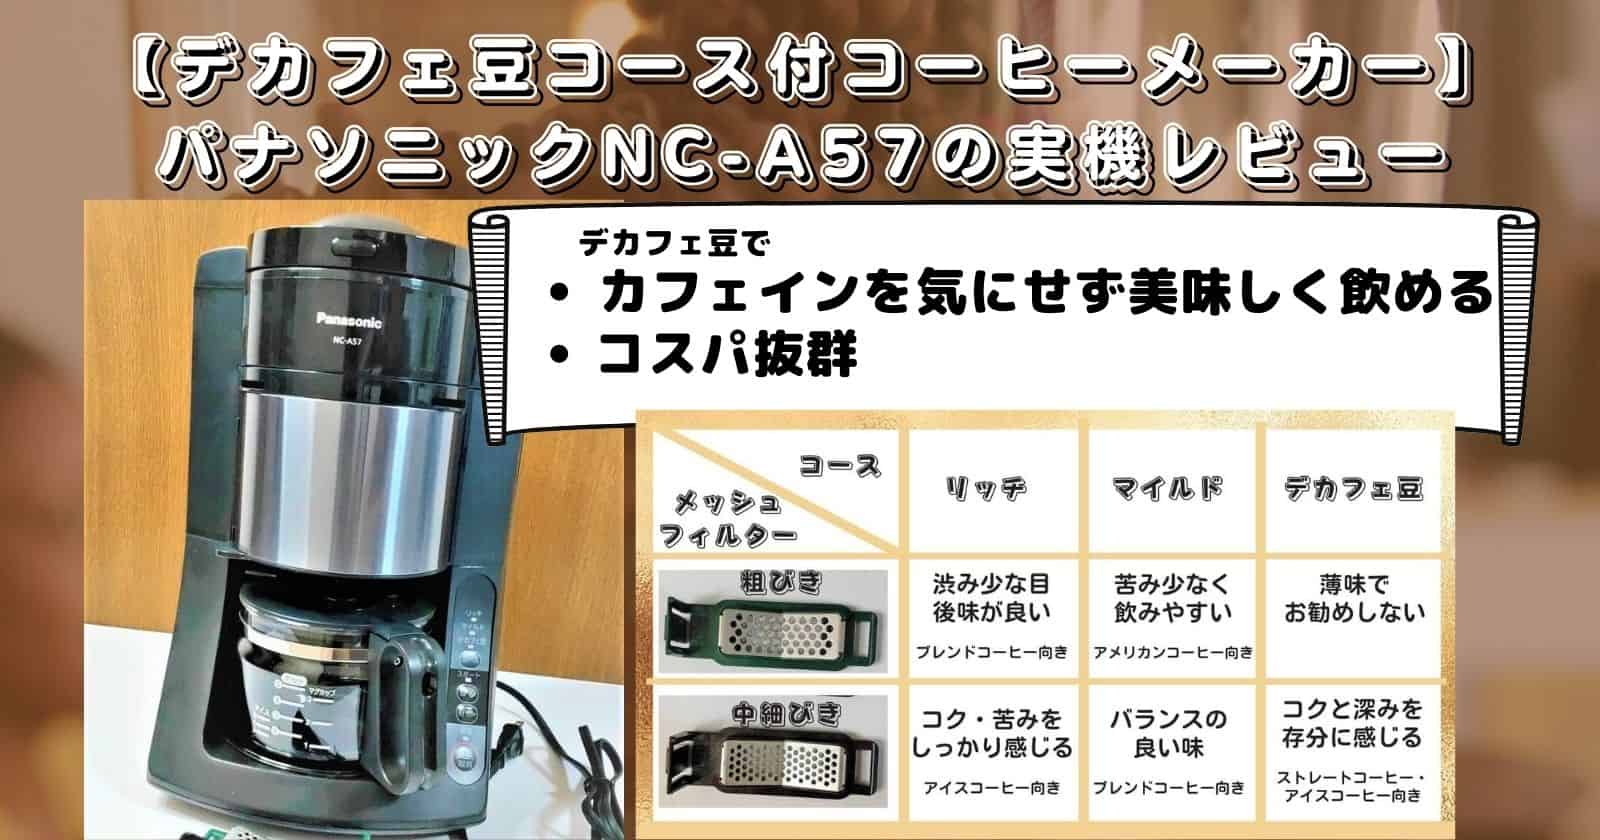 国際ブランド】 Panasonic コーヒーメーカー NC-A57